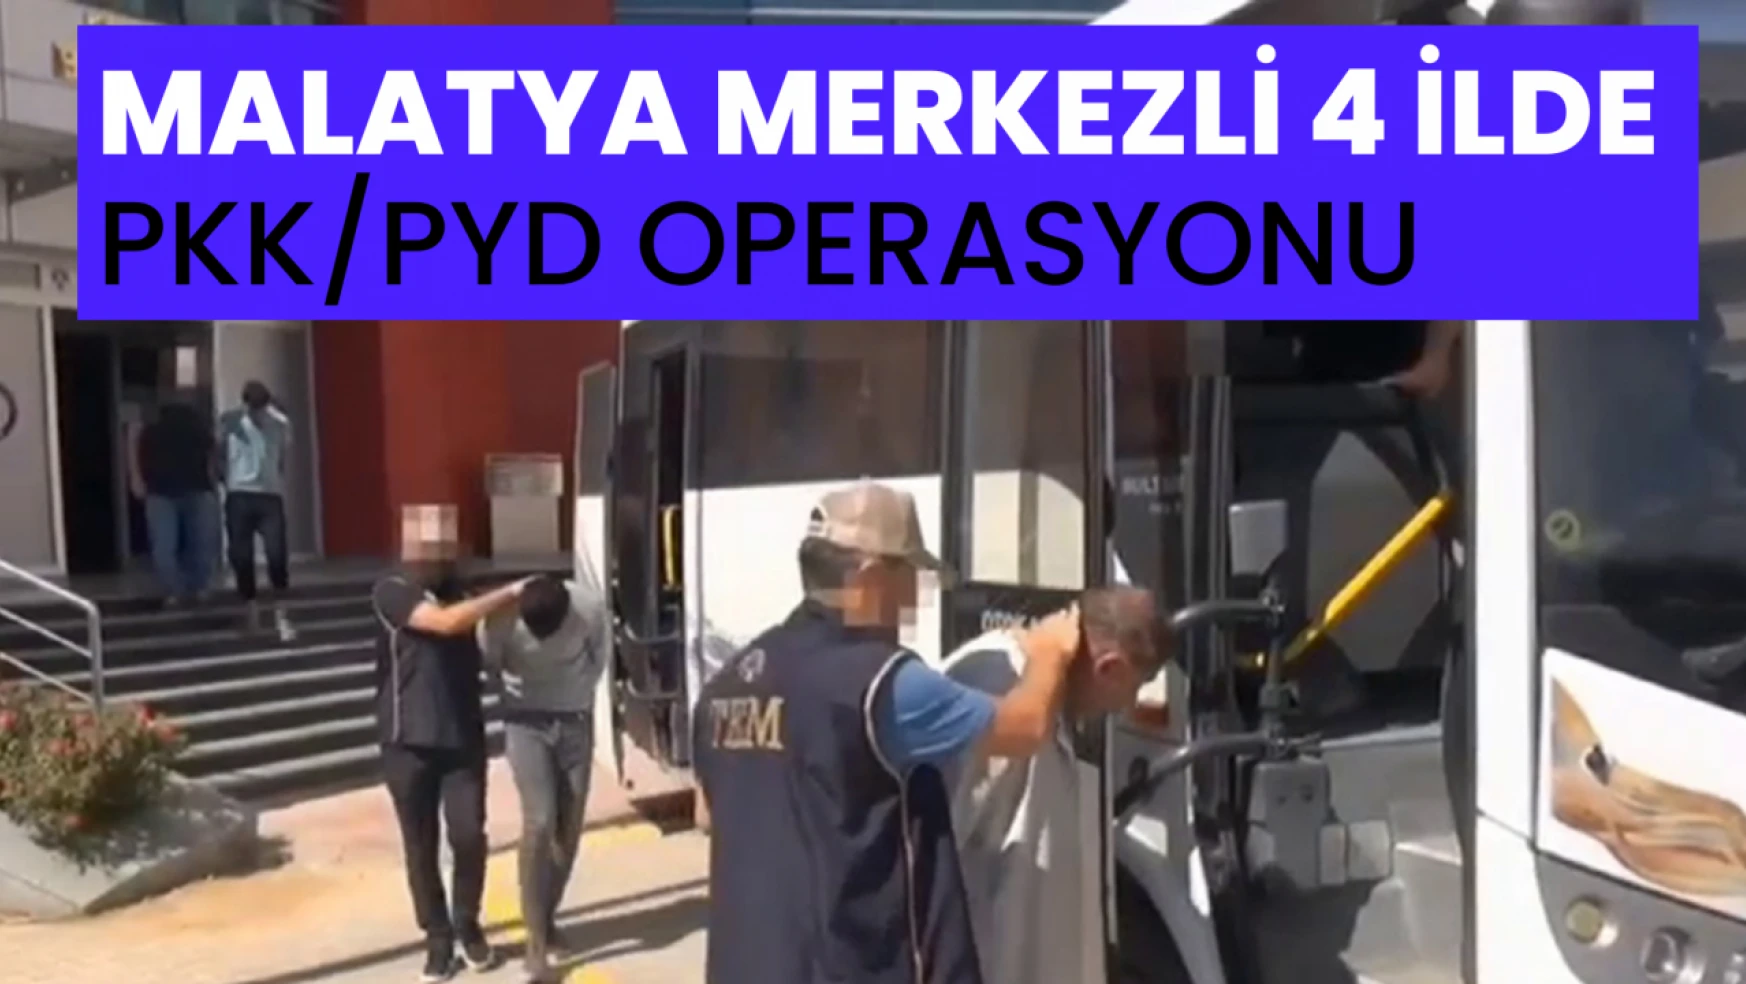 Malatya merkezli 4 ilde PKK/PYD operasyonu: 6 tutuklama